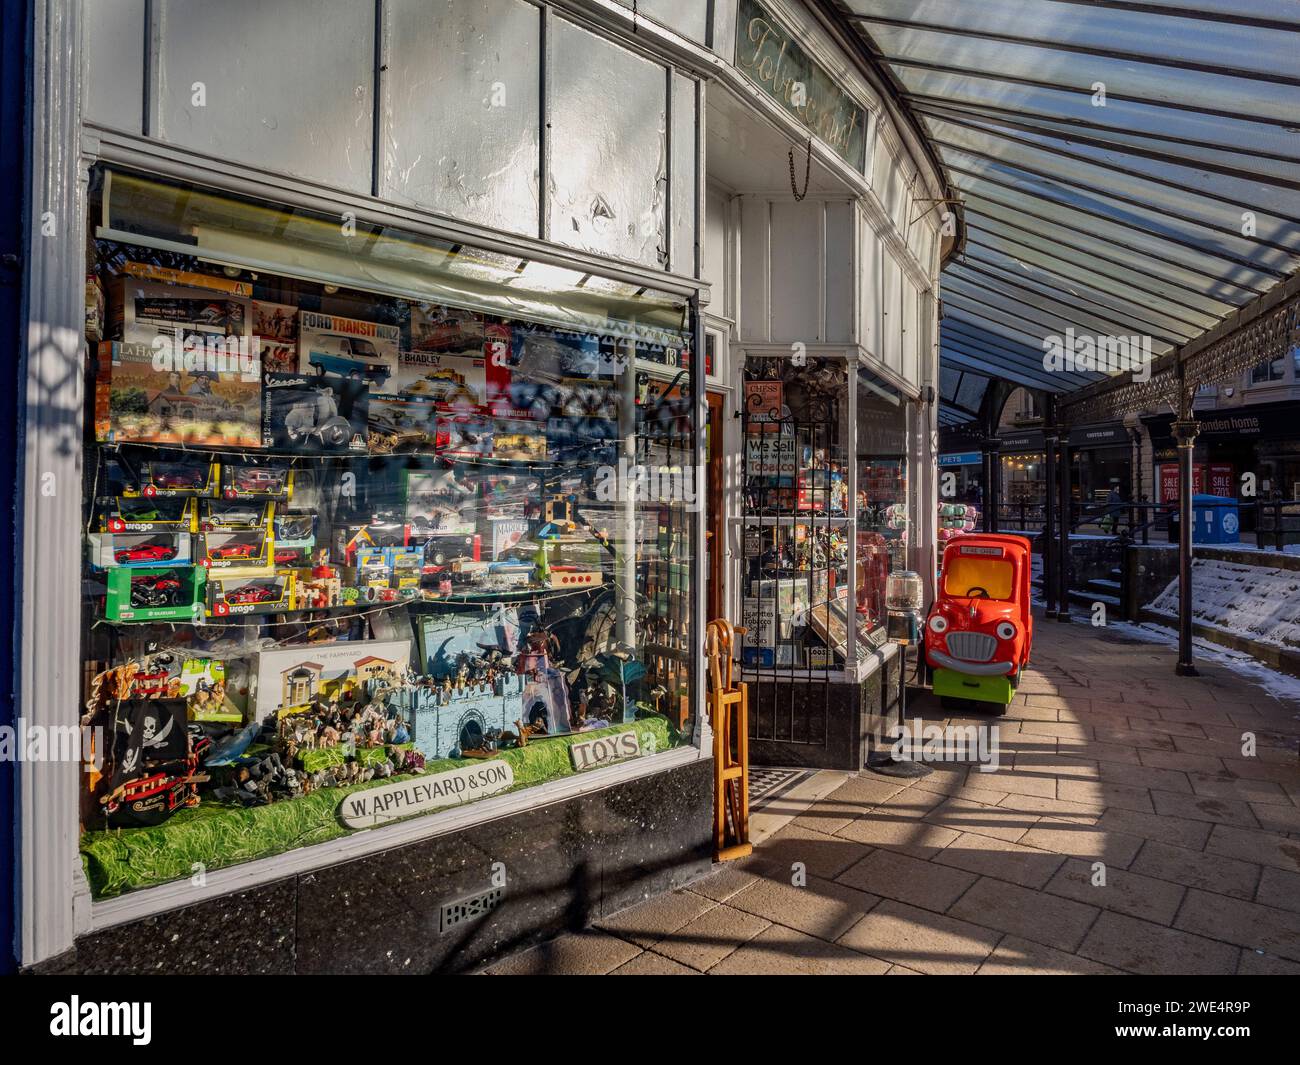 Appleyard's tabac et extérieur du magasin de jouets situé sur Grove Parade, Buxton. Derbyshire. ROYAUME-UNI Banque D'Images